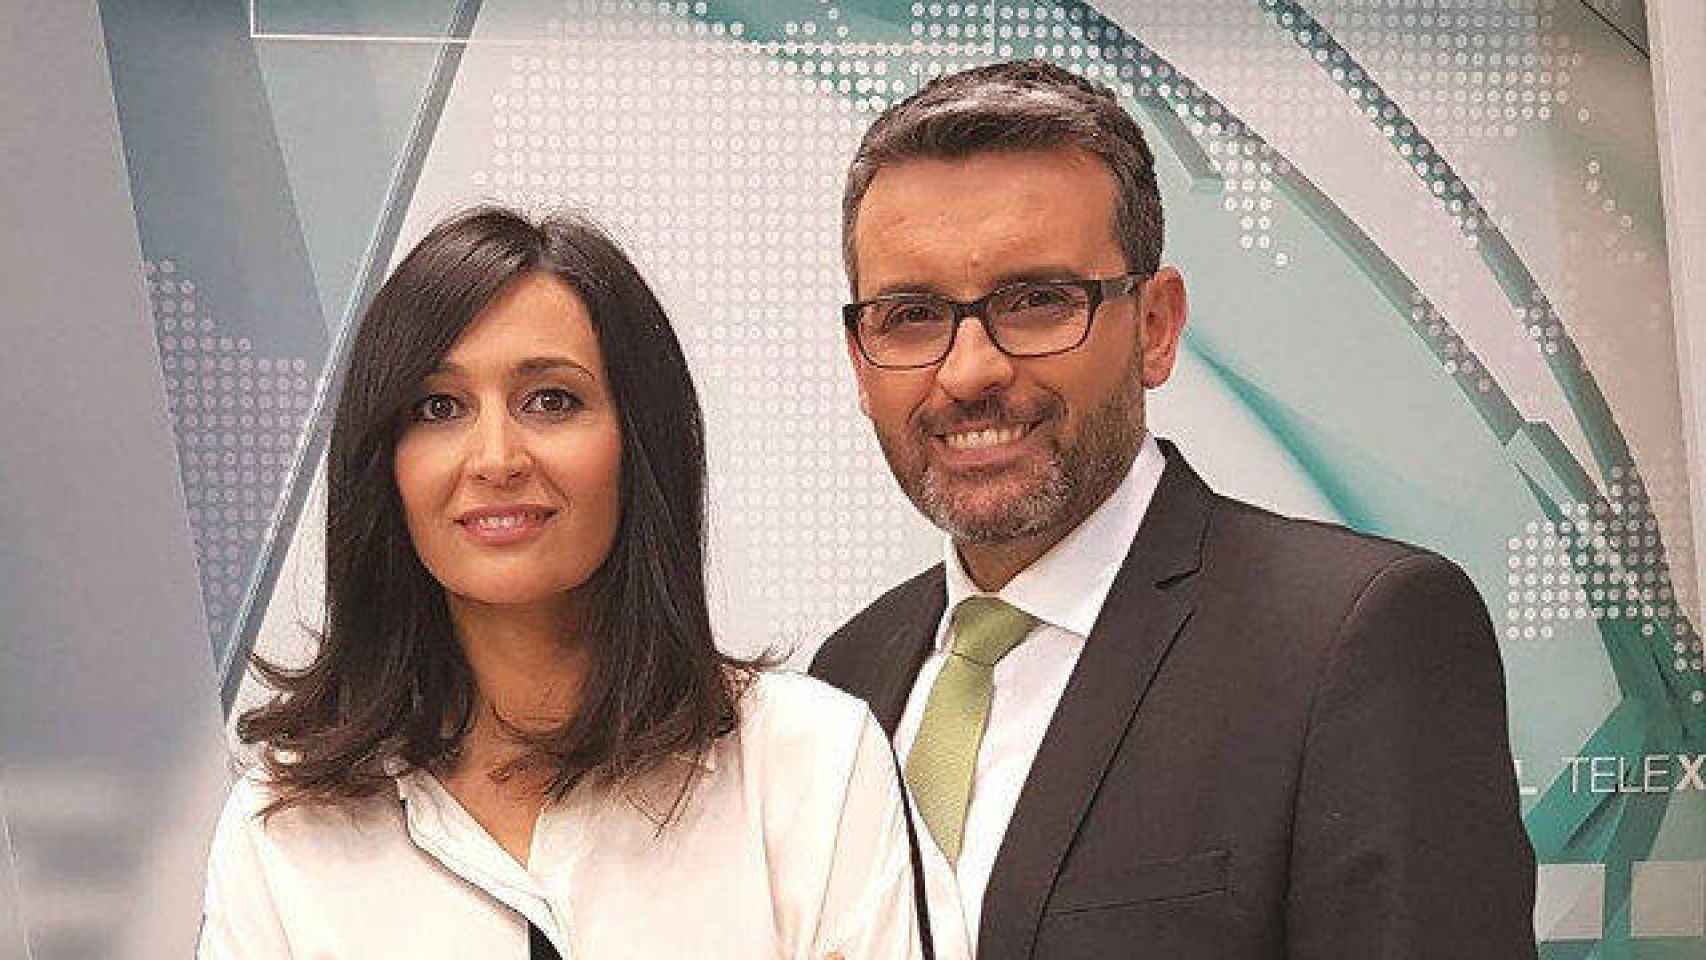 Dimiten dos presentadores de la TVG por la línea editorial de la cadena